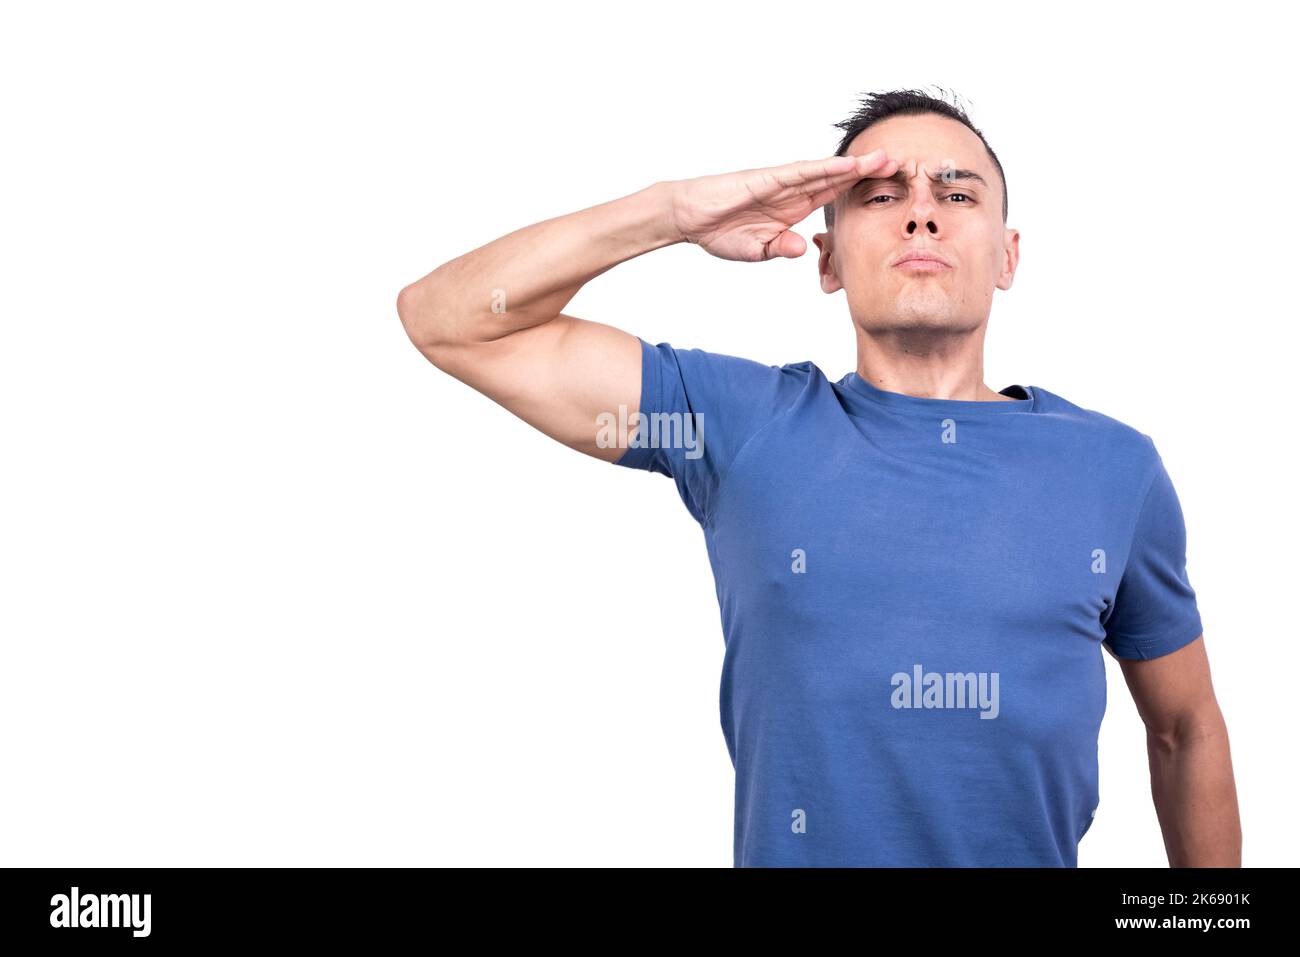 Homme donnant un salut militaire avec sa main Banque D'Images